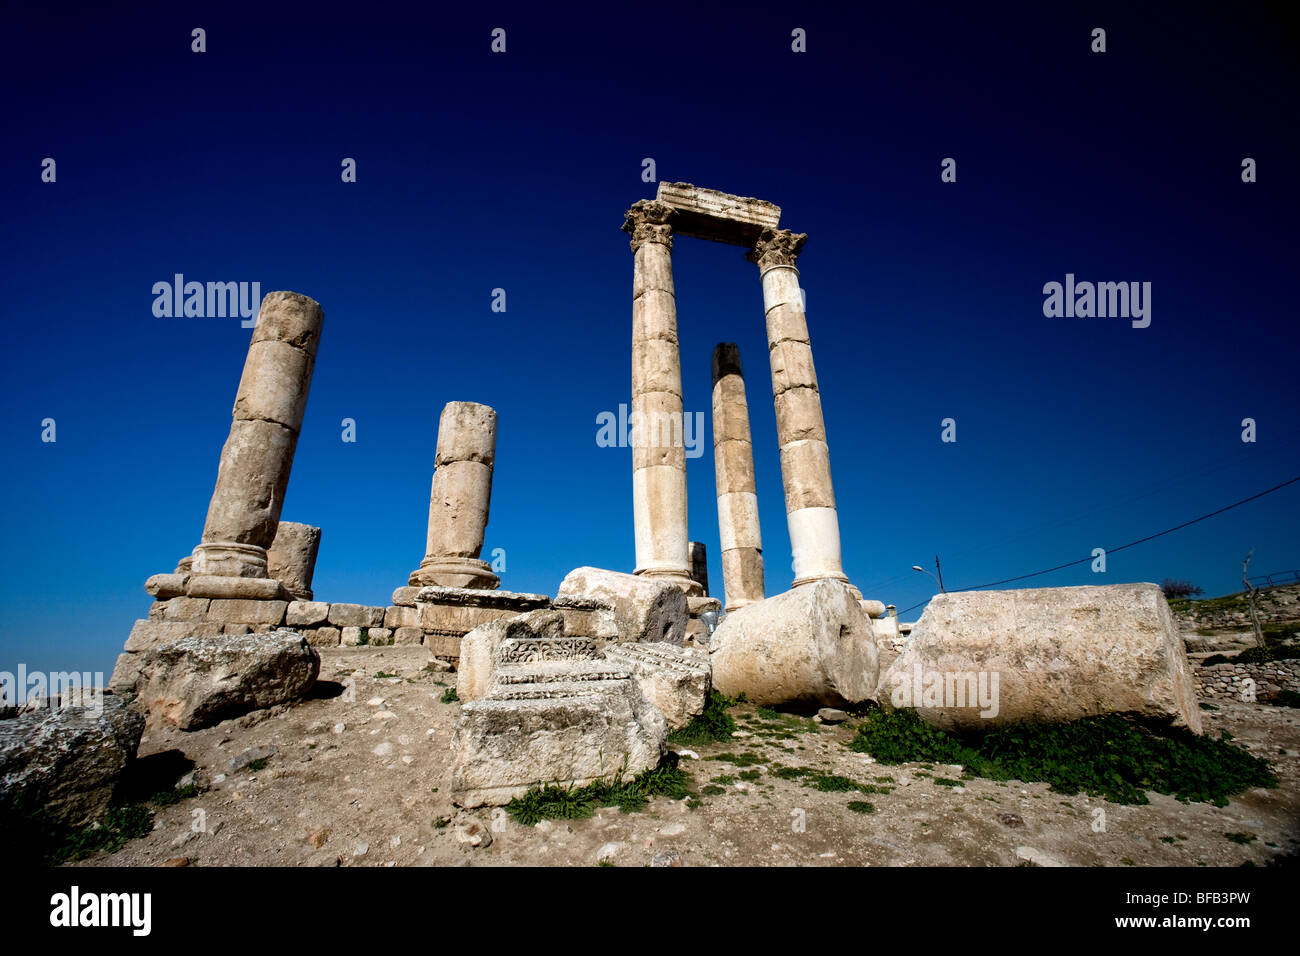 Temple of Hercules, Citadel Hill, Amman, Jordan Stock Photo